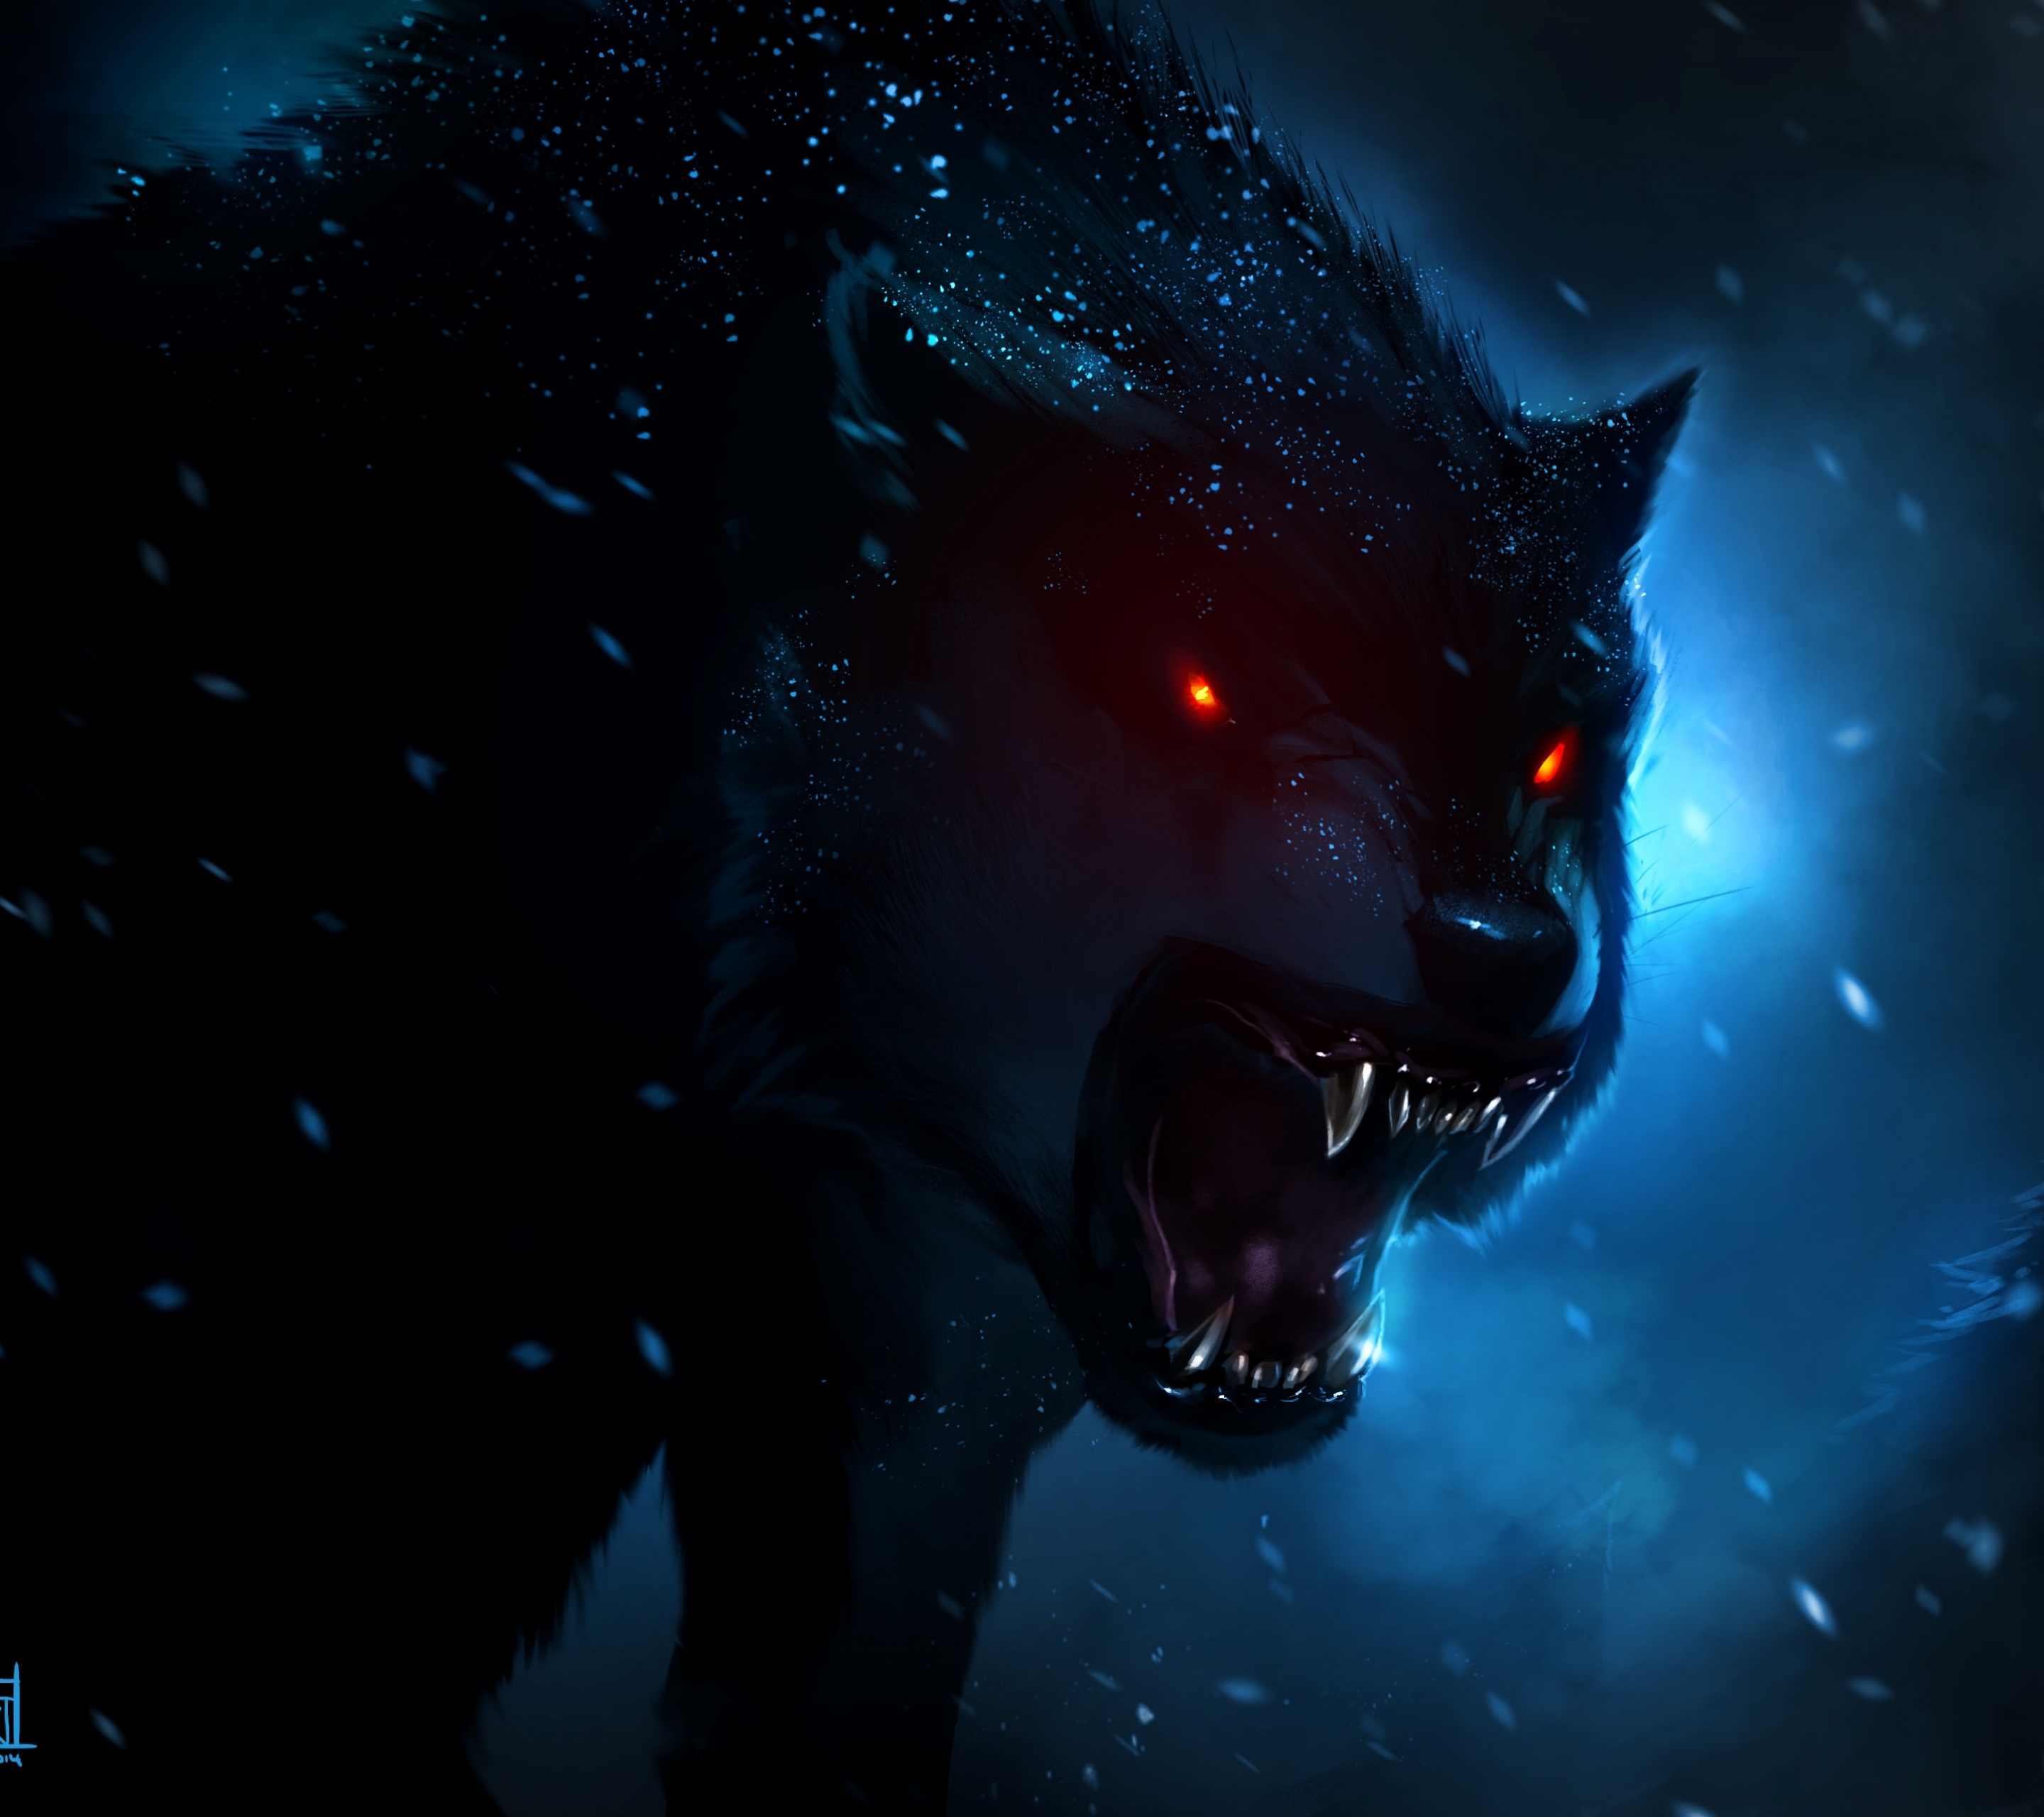 moto e3 power wallpaper,darkness,sky,wolf,werewolf,fictional character